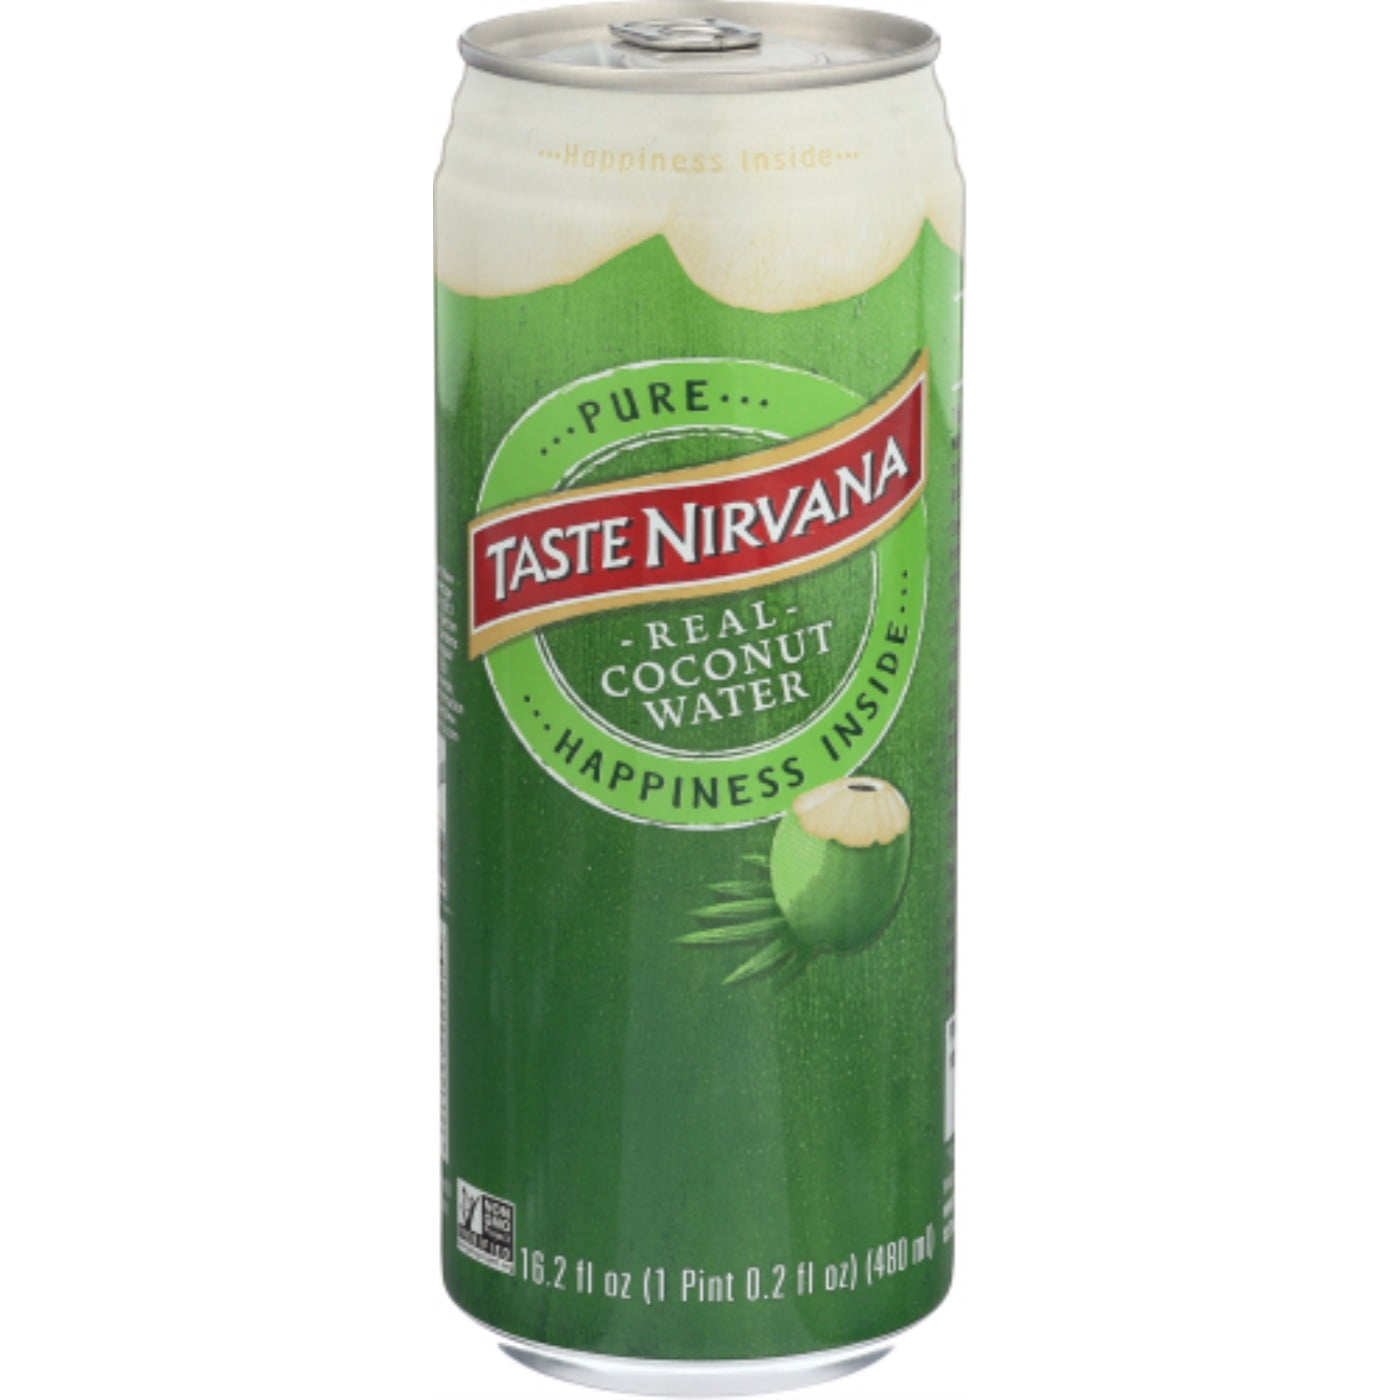 Taste Nirvana Real Coconut Water 16.2 fl oz